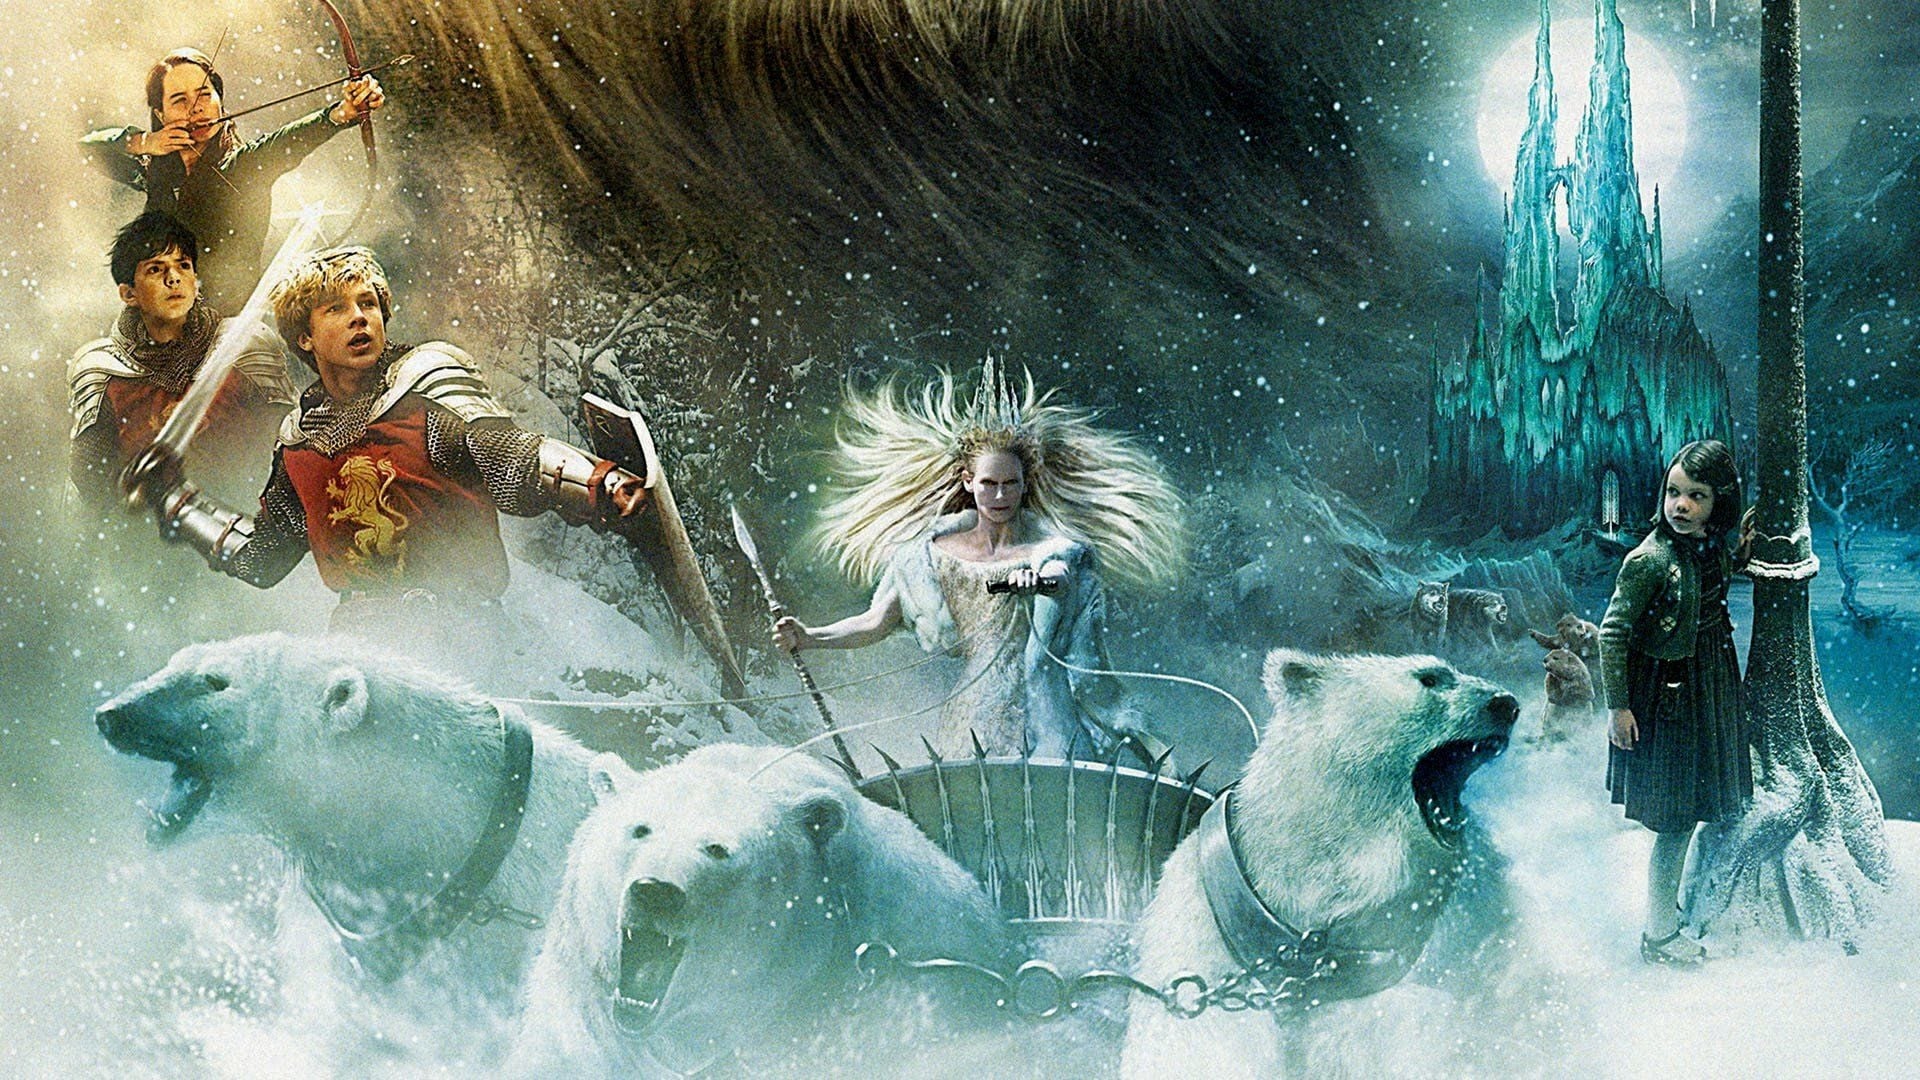 Letopisy Narnie: Lev, čarodějnice a skříň (2005)